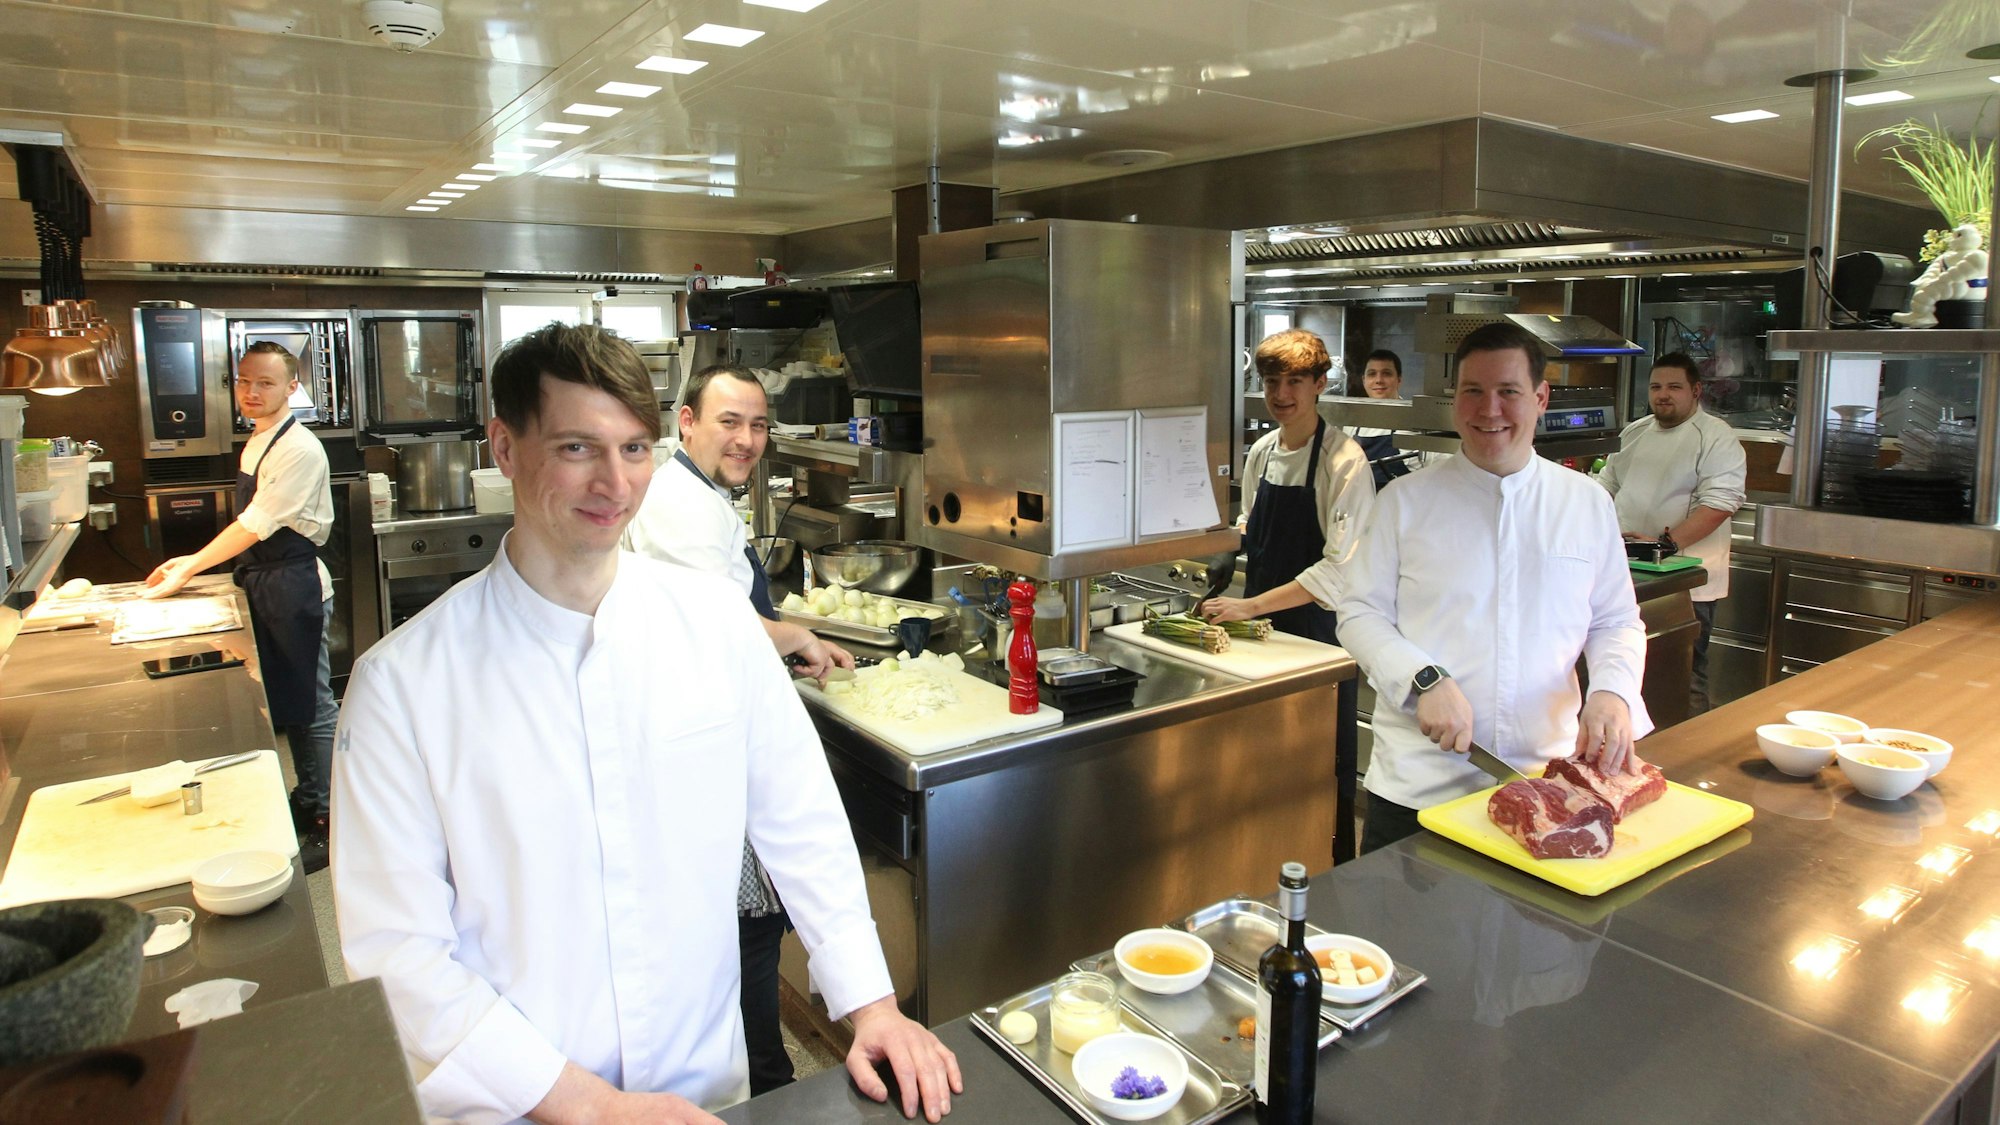 Thomas und sein Team lächeln in die Kamera und stehen an verschiedenen Stationen in der Küche.